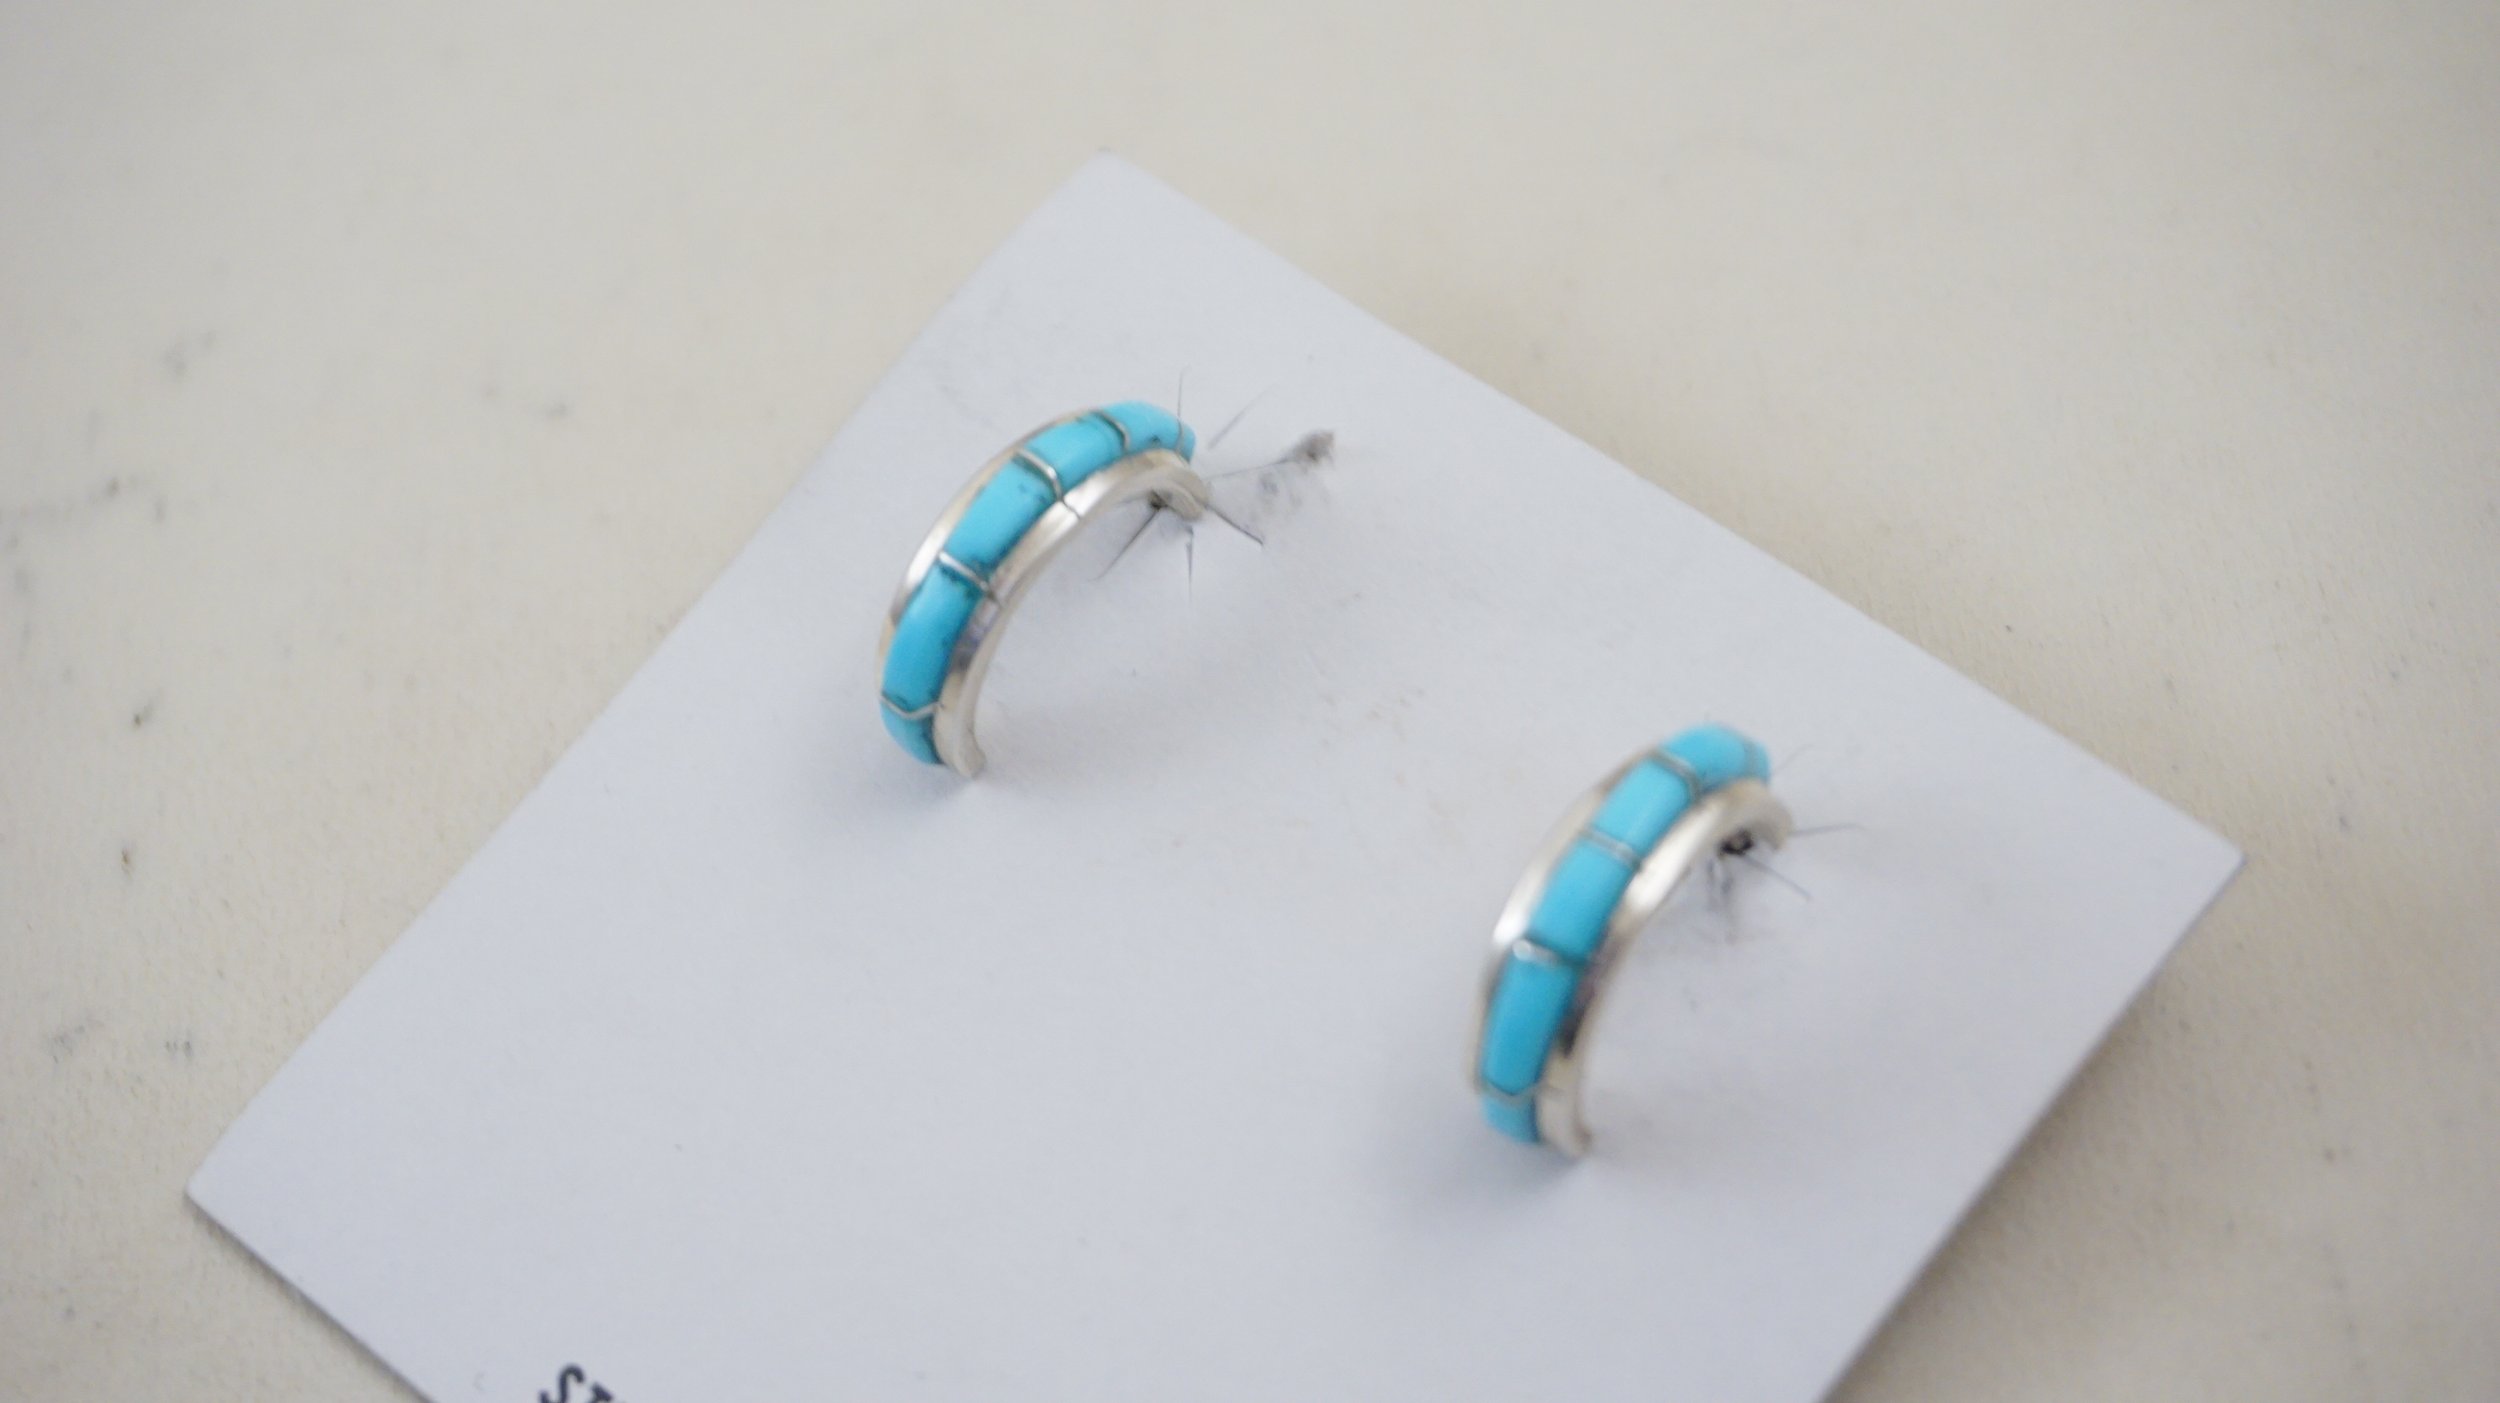 Details about   Navajo Handmade Turquoise Sterling Silver Post Earrings Half Hoop 